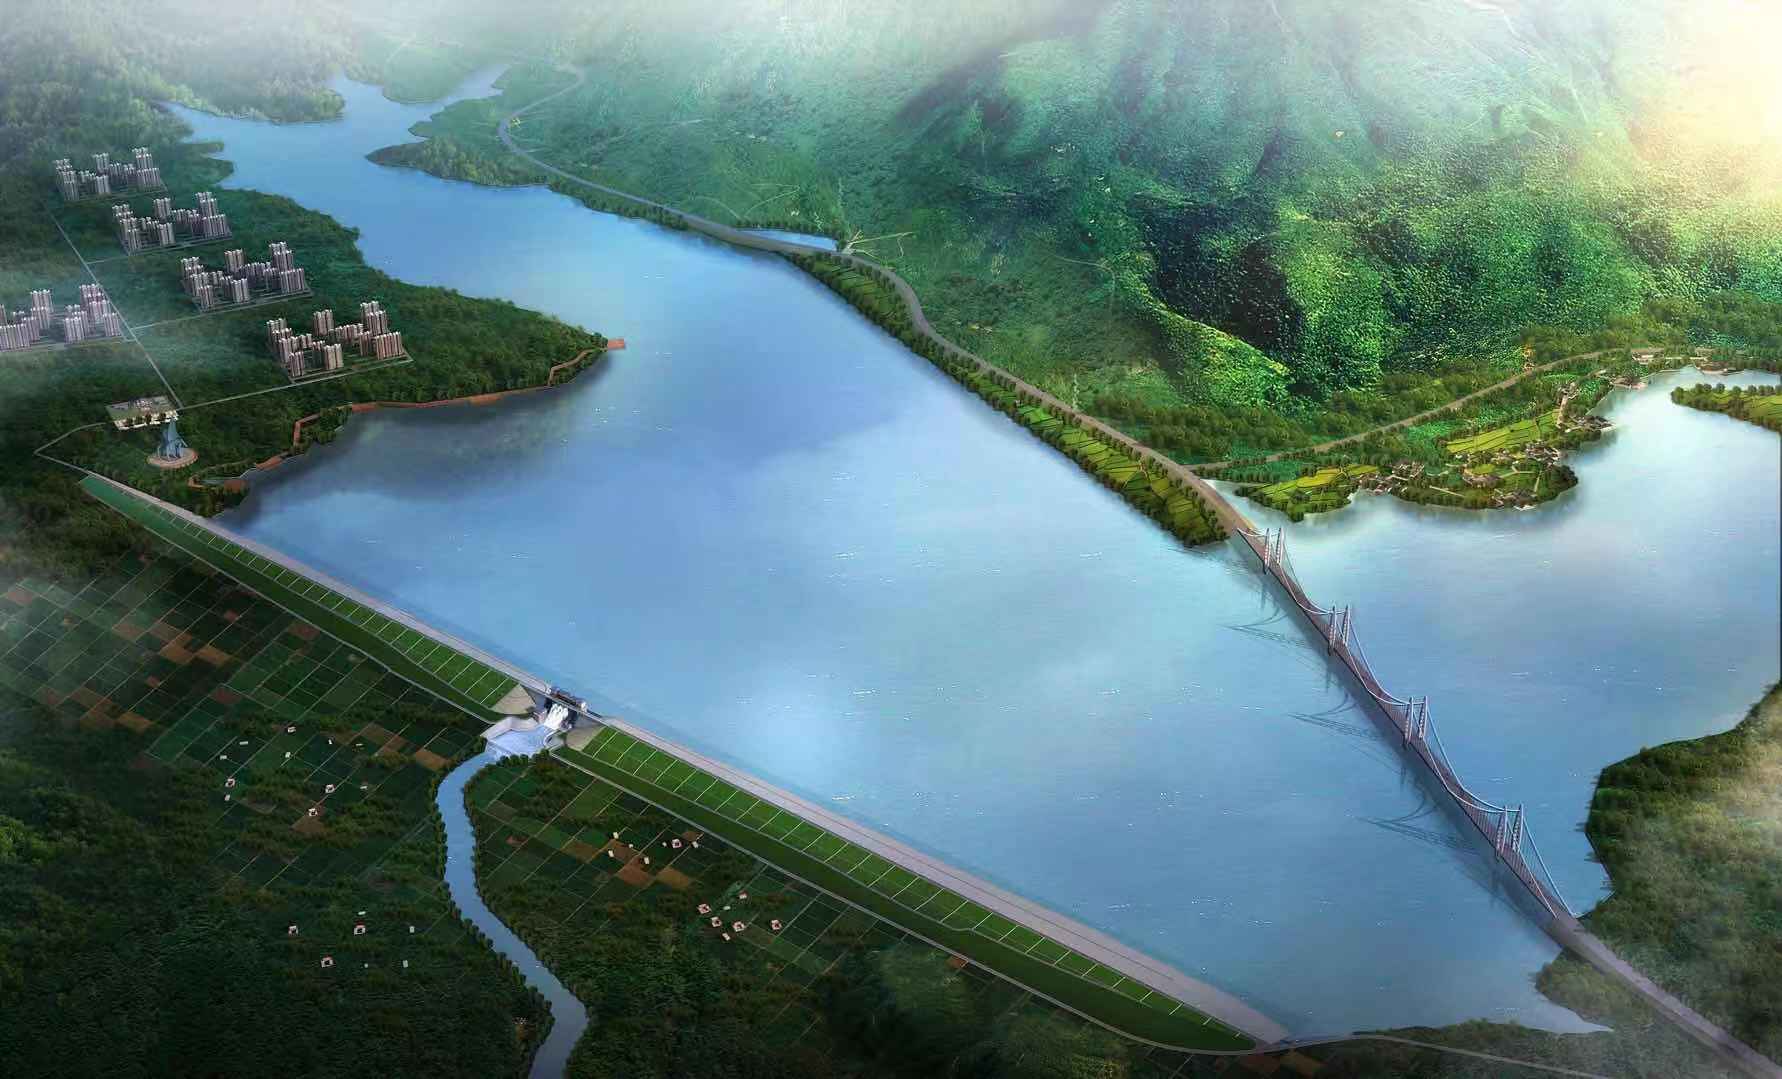 枣庄市庄里水库位于山亭区和滕州市境内,是山东省近30年来规划建设的